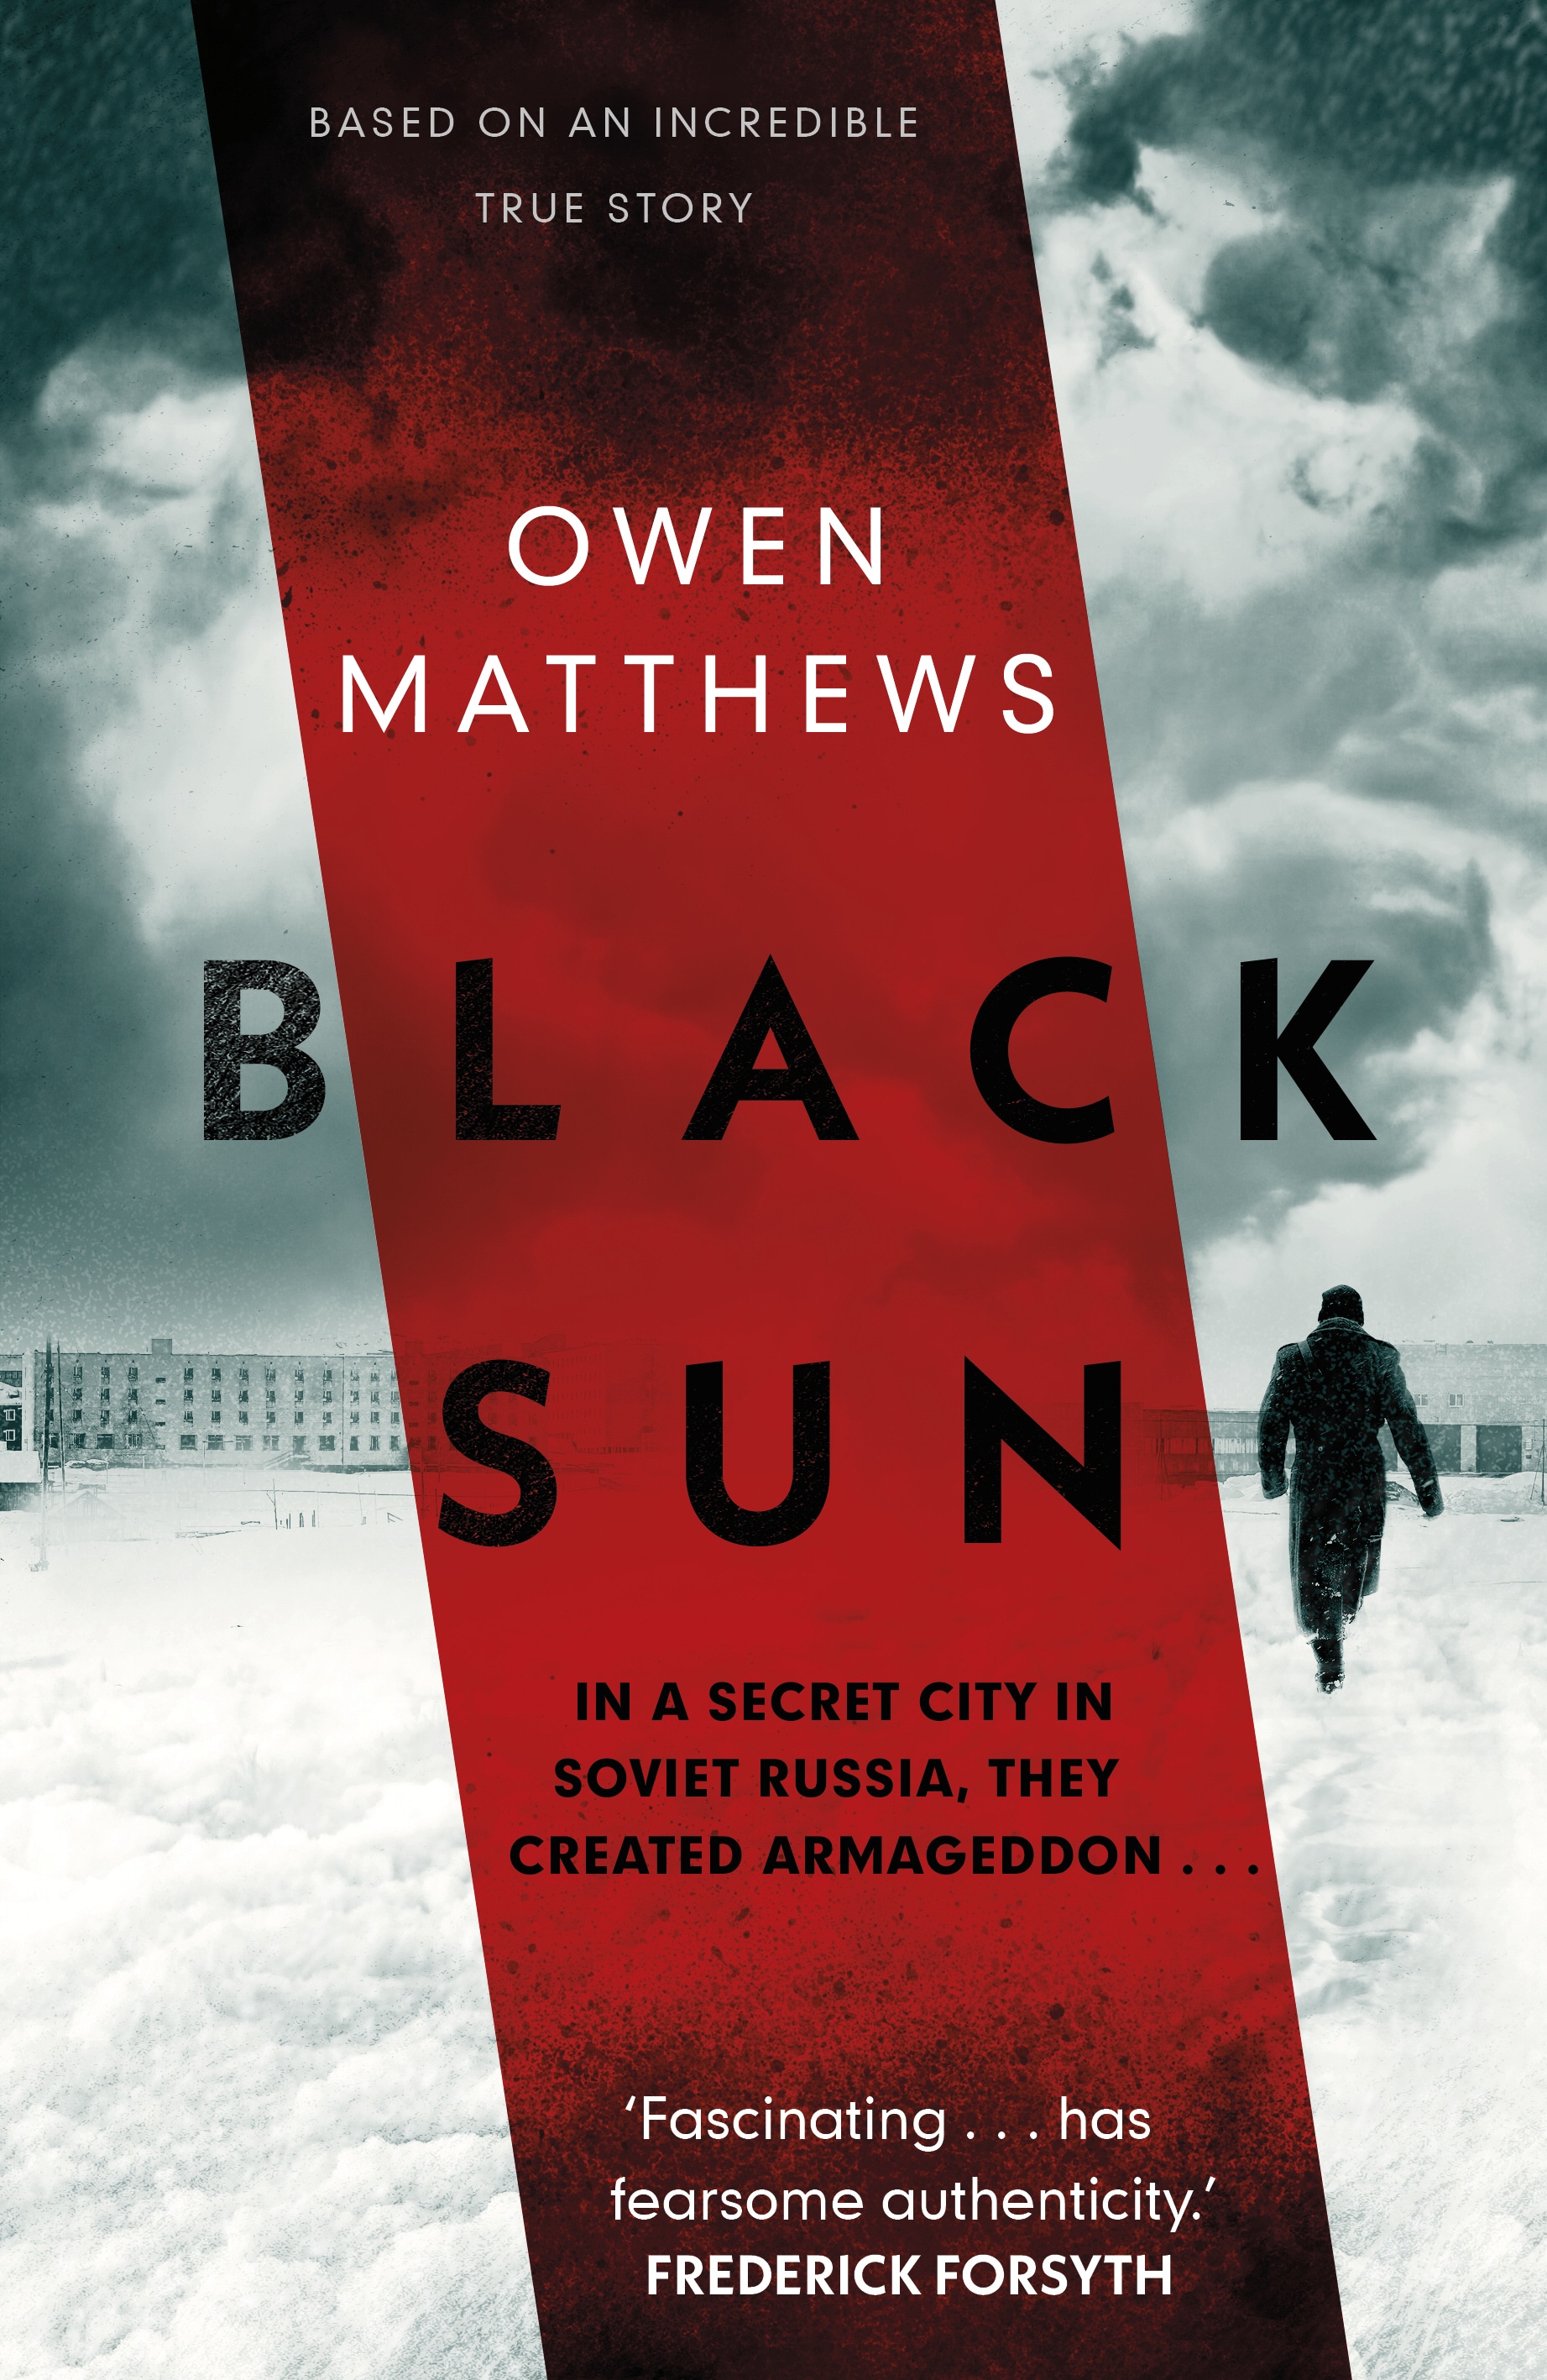 Book “Black Sun” by Owen Matthews — October 3, 2019